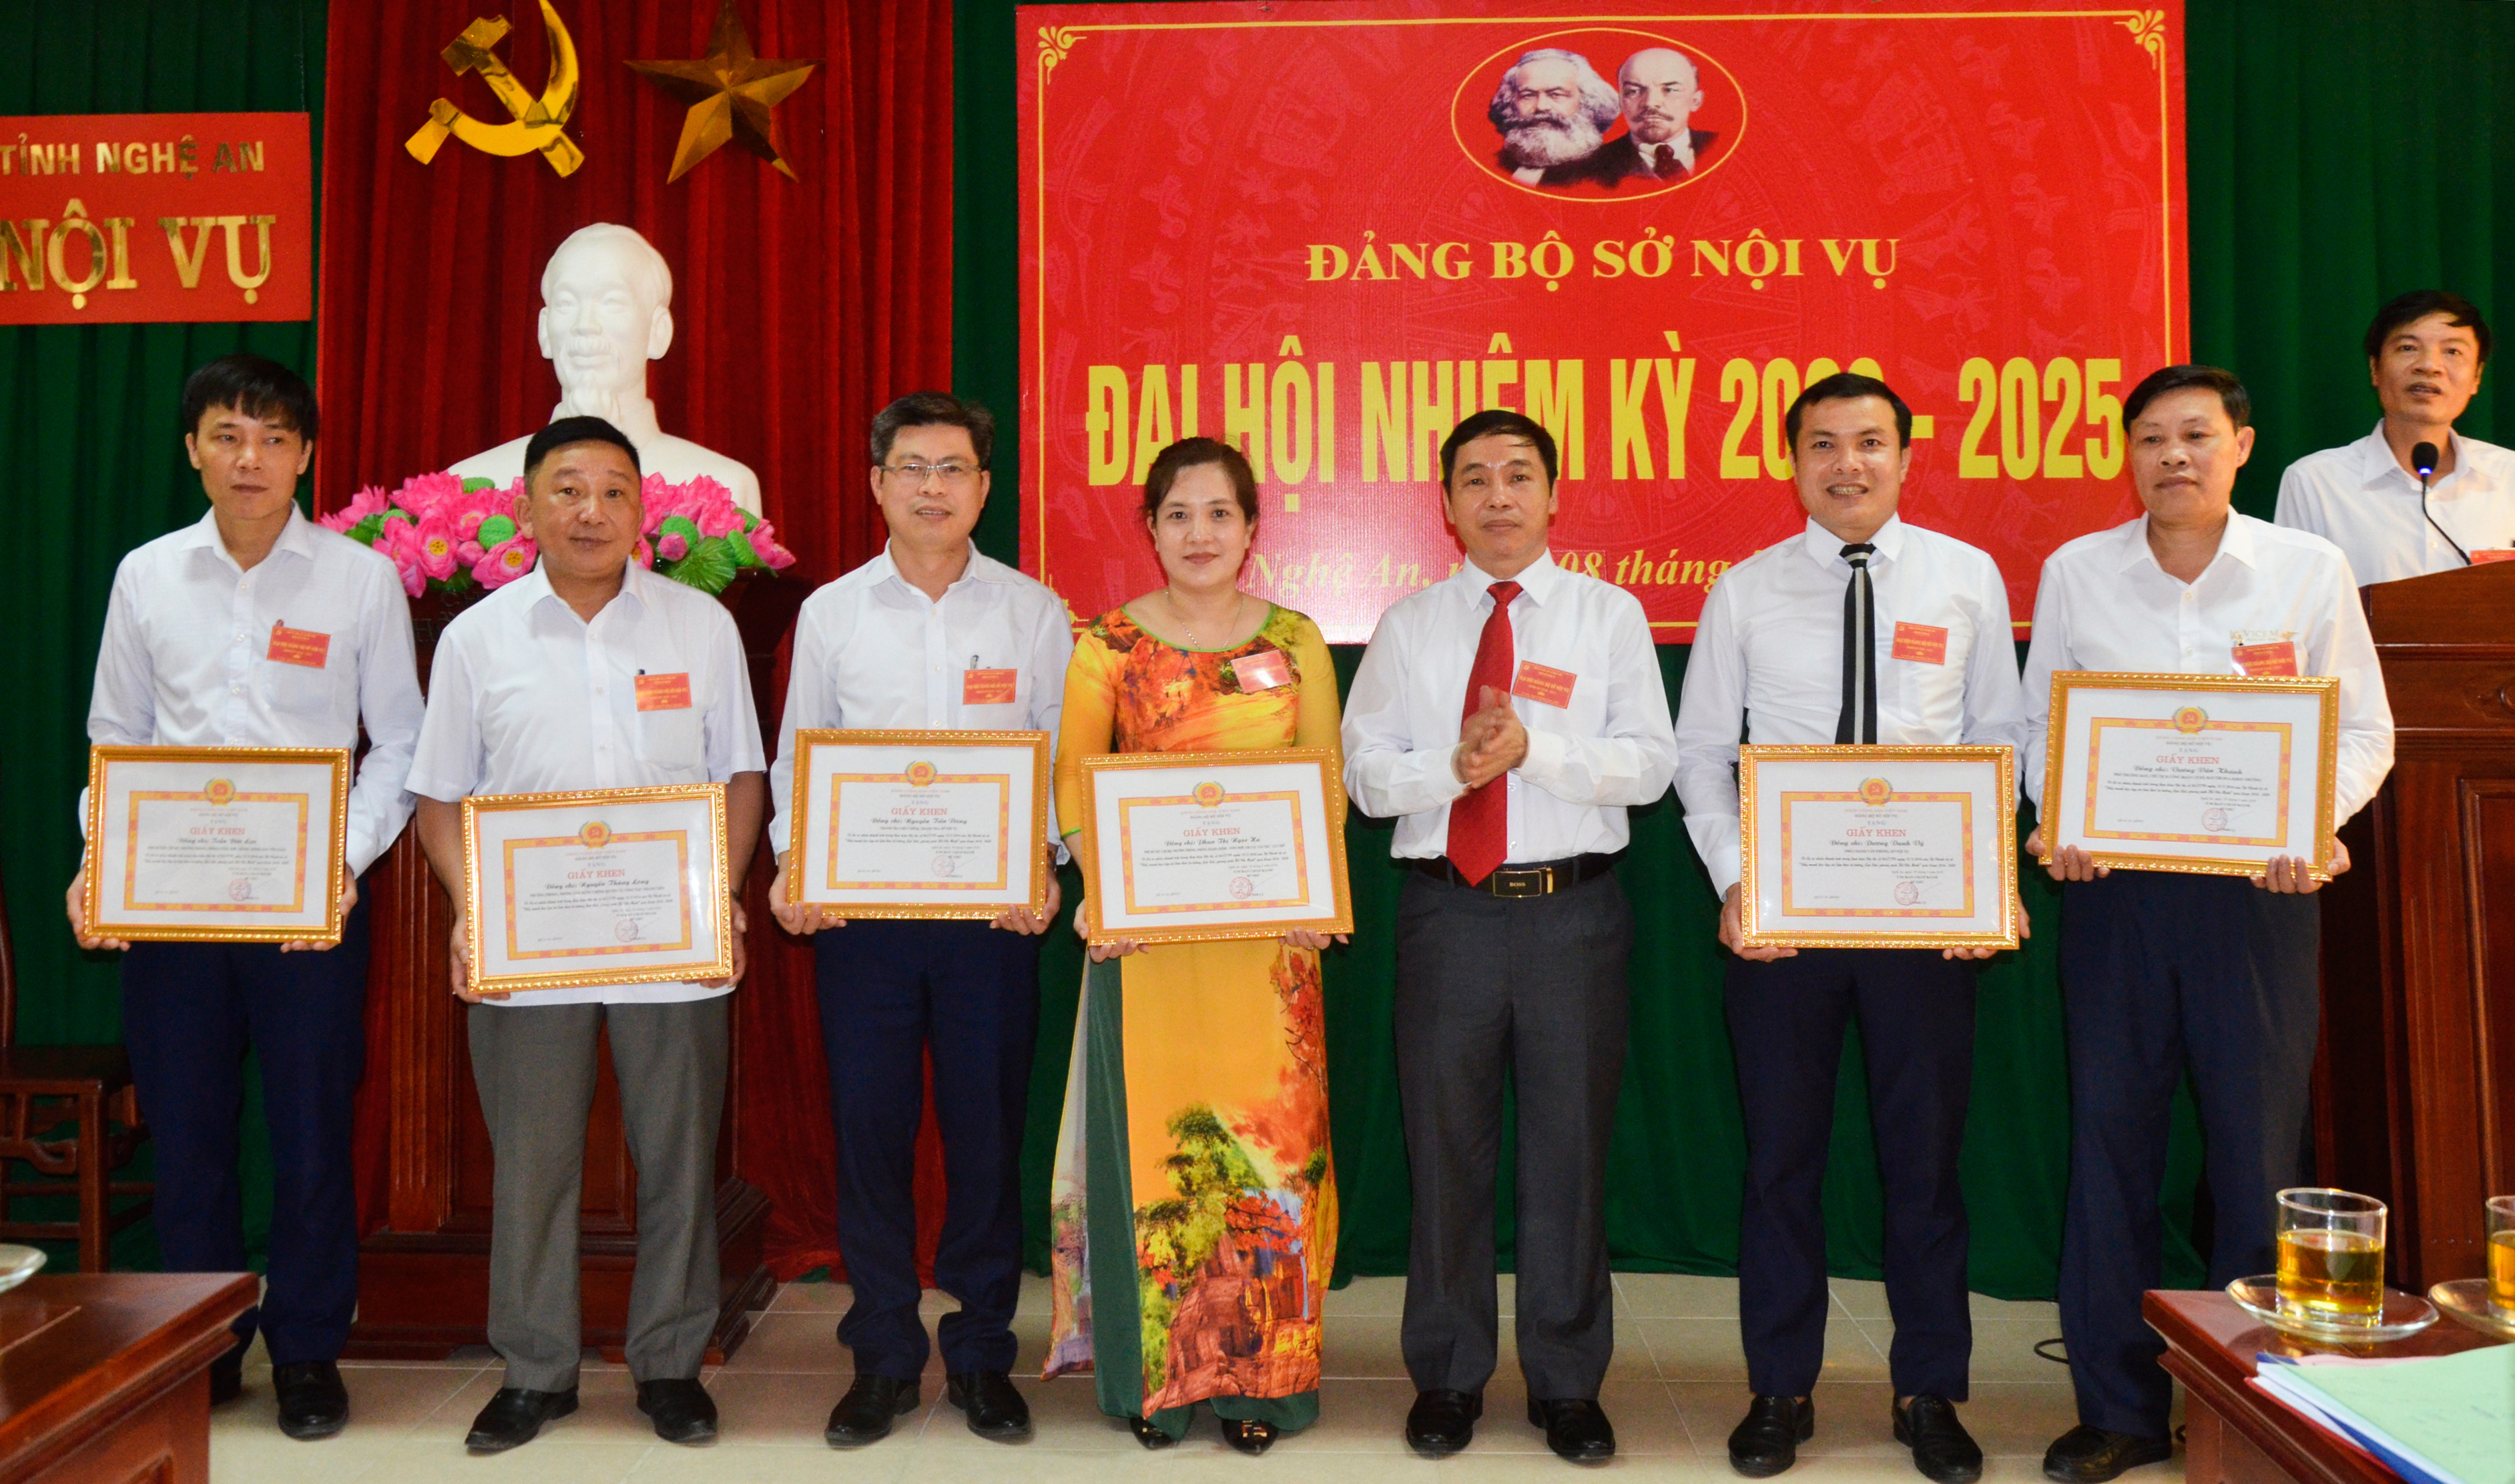 Đảng ủy Sở Nội vụ khen thưởng cho các cá nhân có thành tích xuất sắc trong thực hiện Chỉ thị 05 của Bộ Chính trị. Ảnh: Thanh Lê